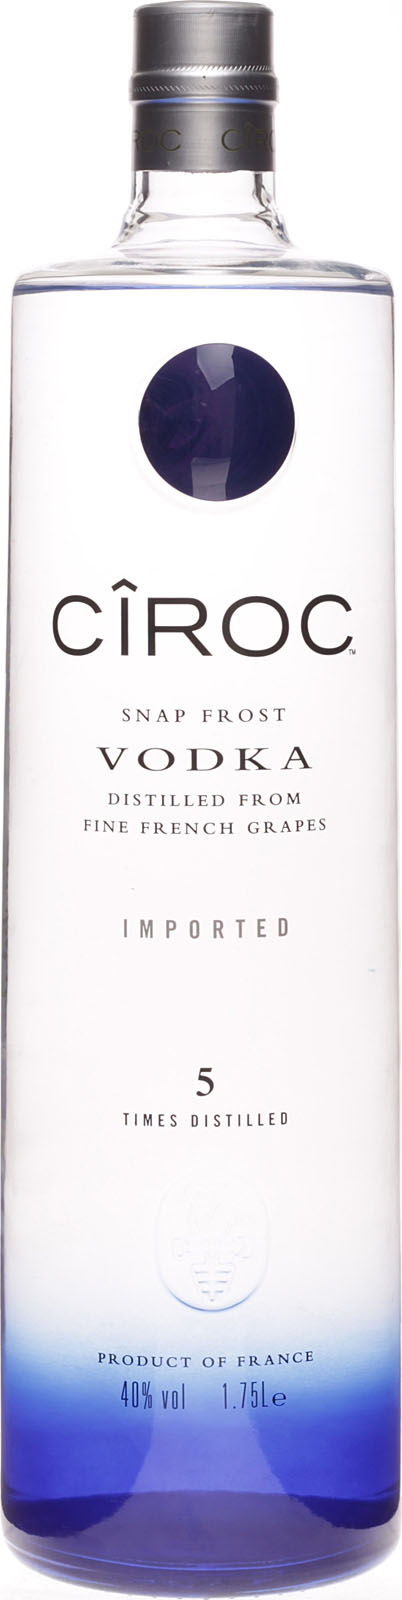 Ciroc Vodka 1,75 % Liter 40